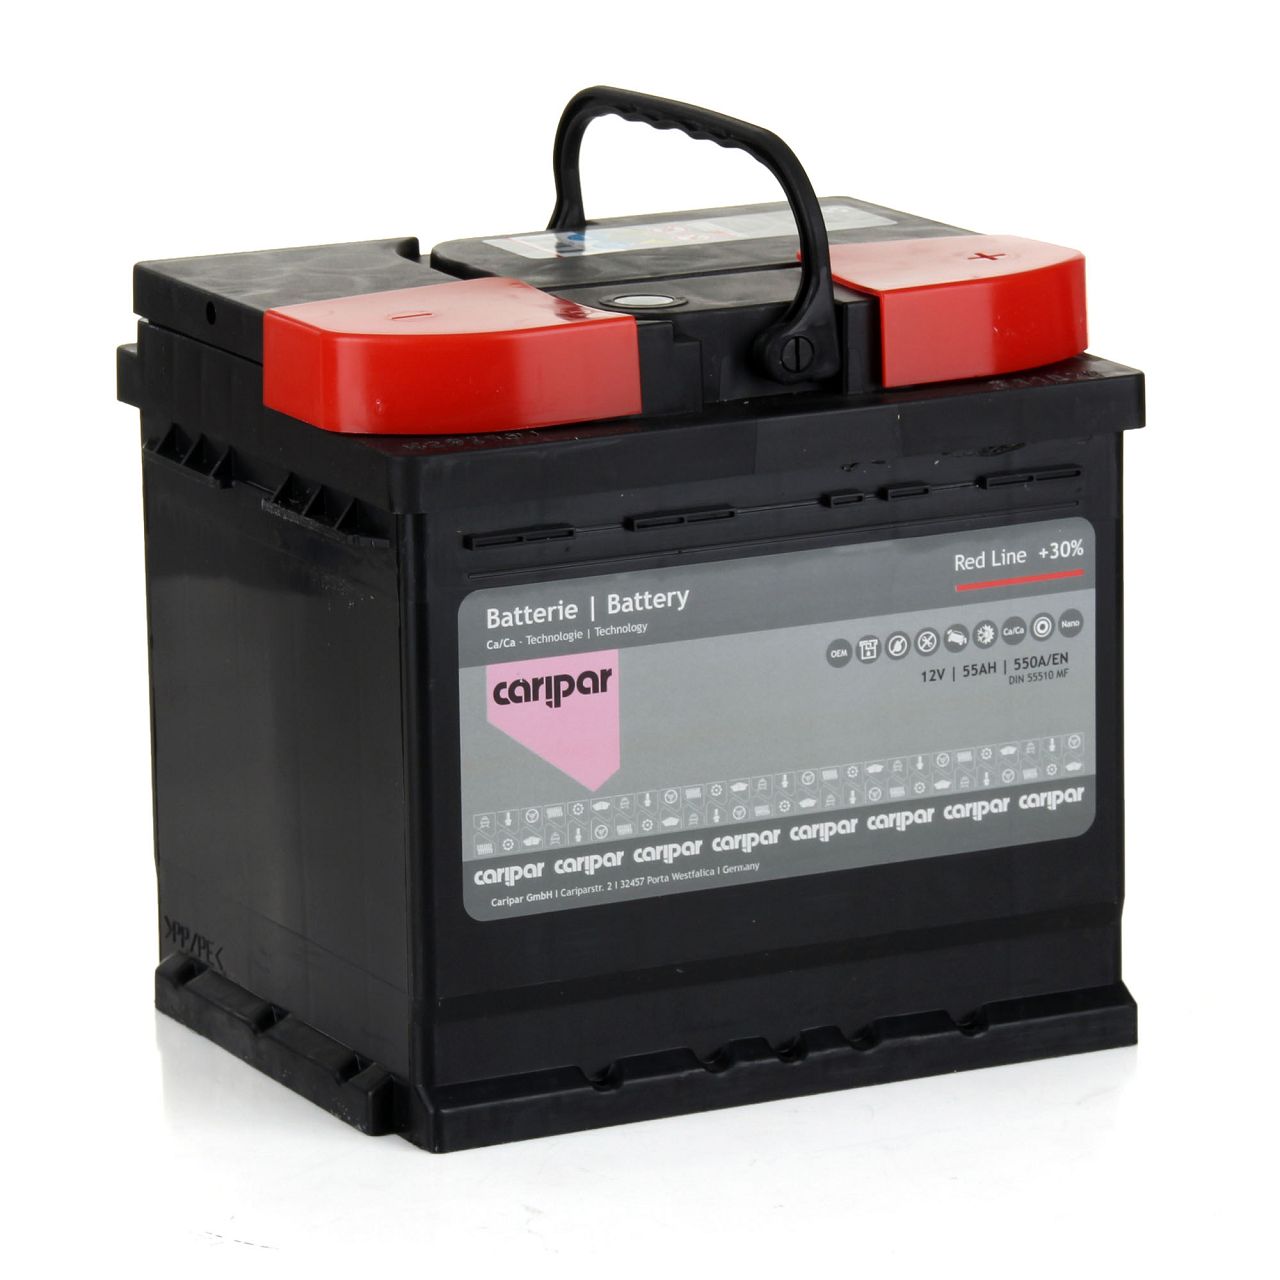 CARIPAR Starterbatterien / Autobatterien - 55510 MF 